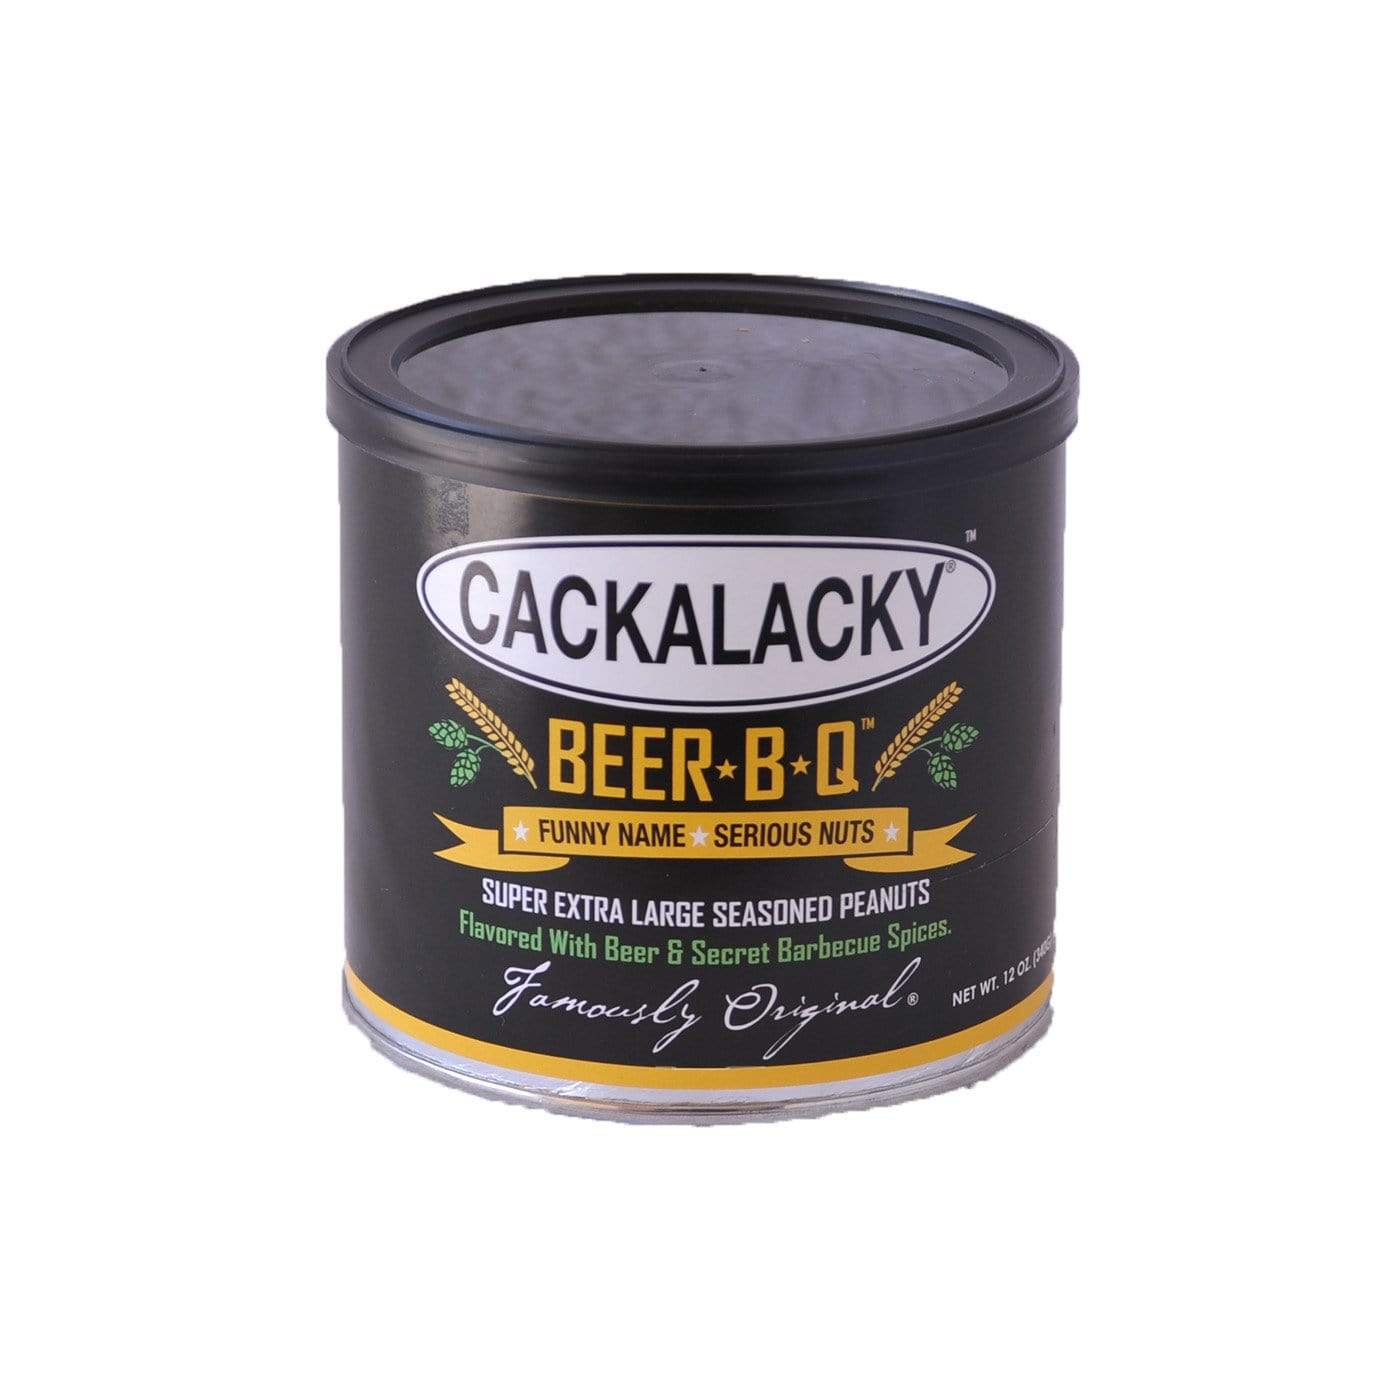 Cackalacky Cackalacky Beer-B-Q Peanuts